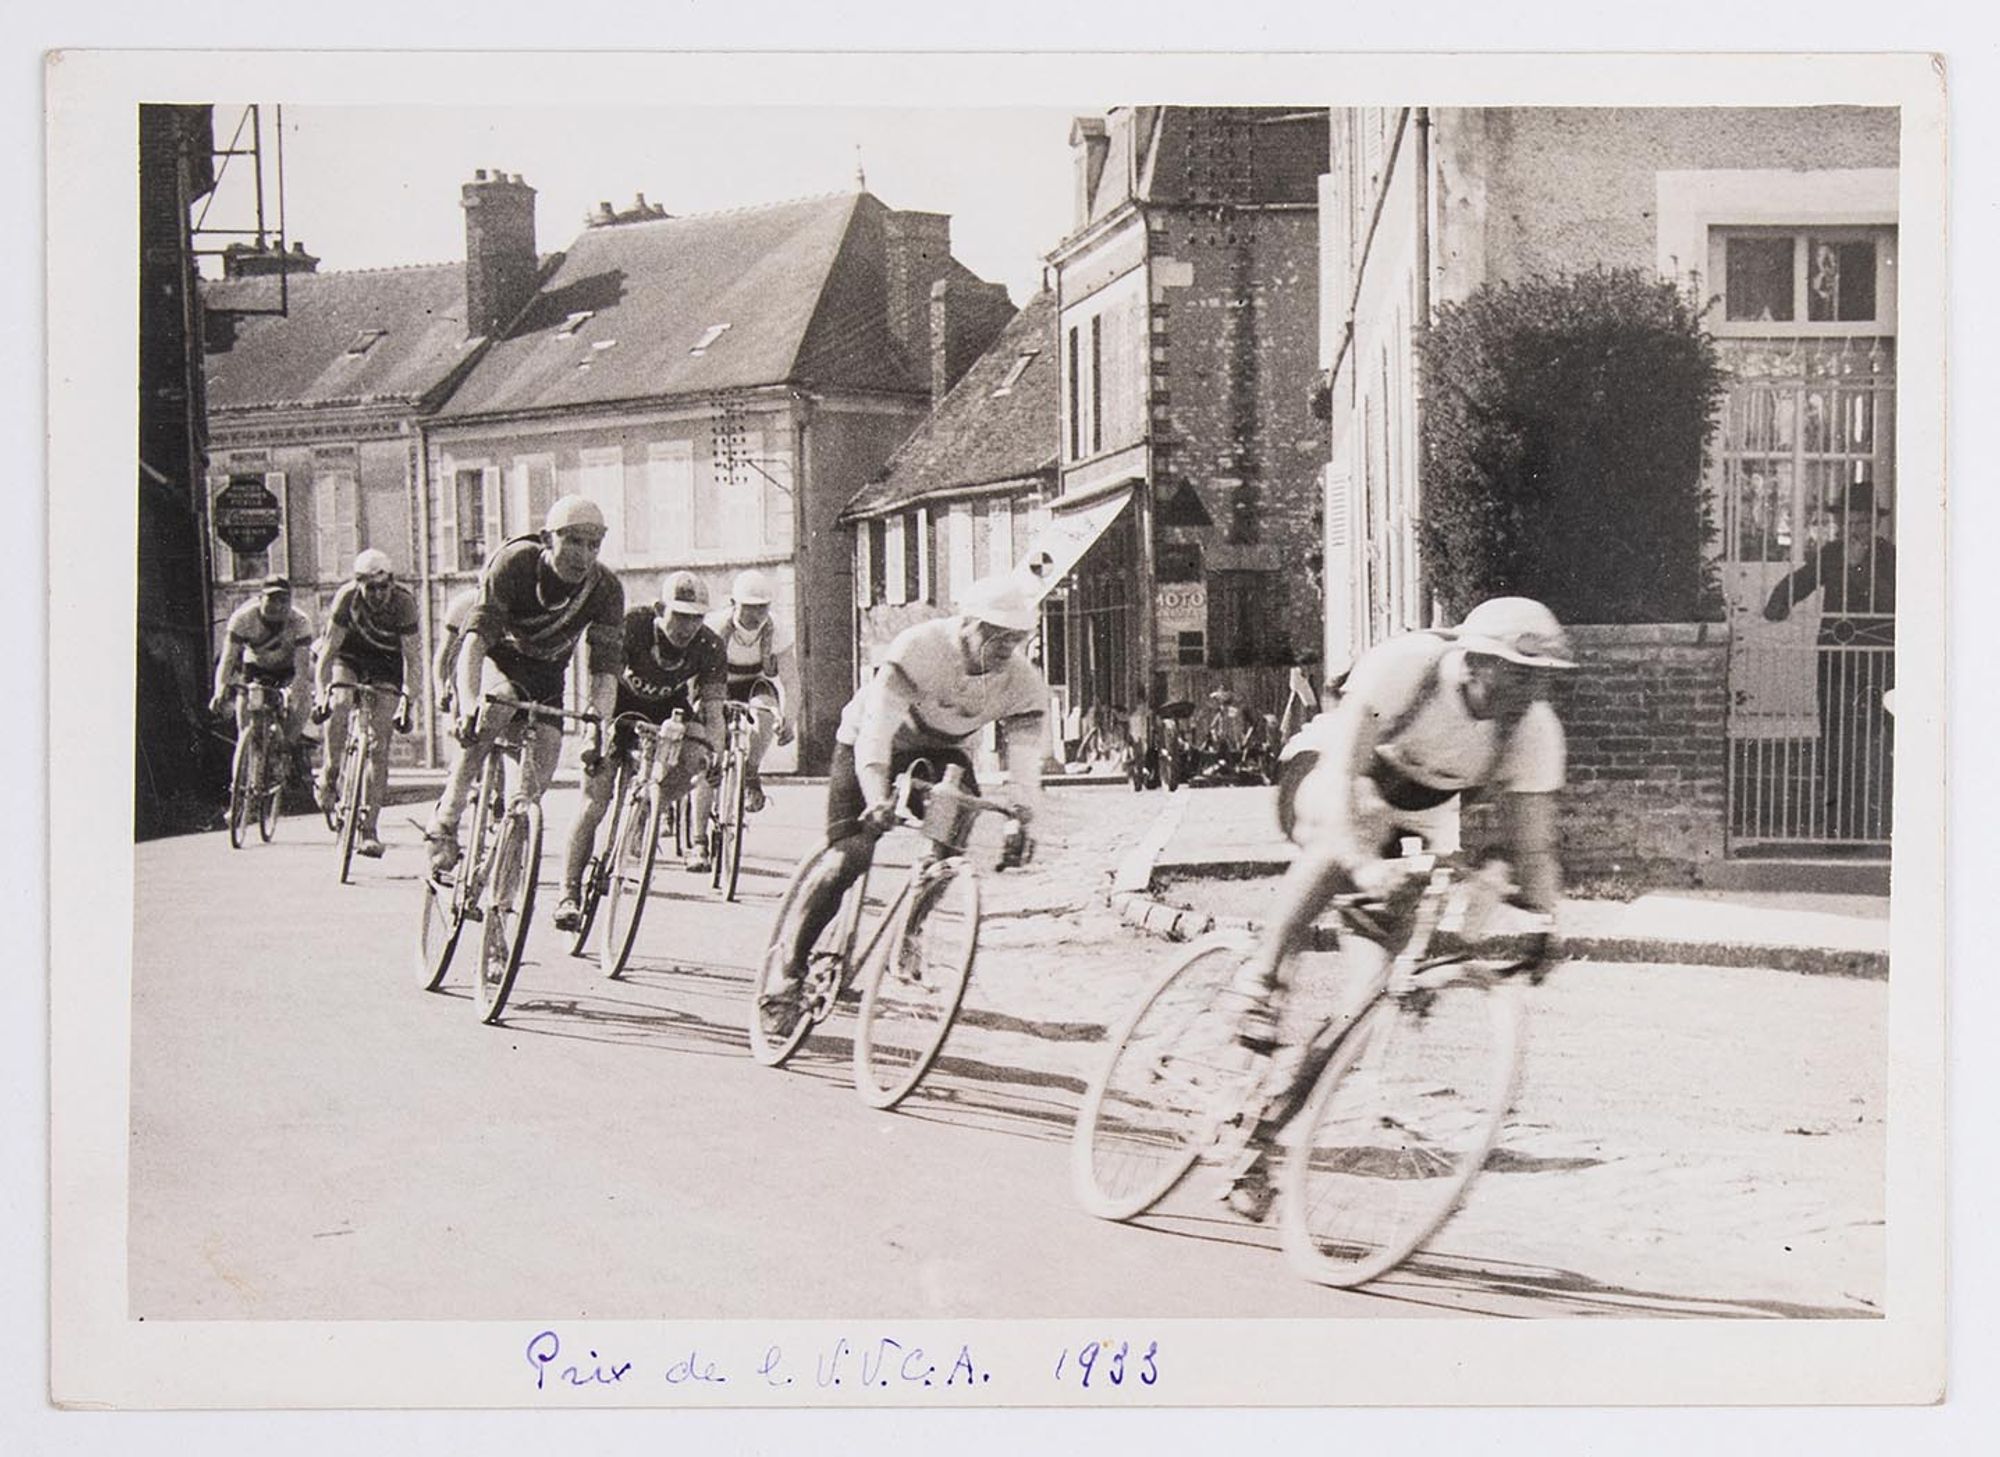 7 mai 1933. Prix de l'Union Vélo Club de l'Aube (U.V.C.A). Un groupe de coureurs cyclistes dans un village. Lieu non identifié.